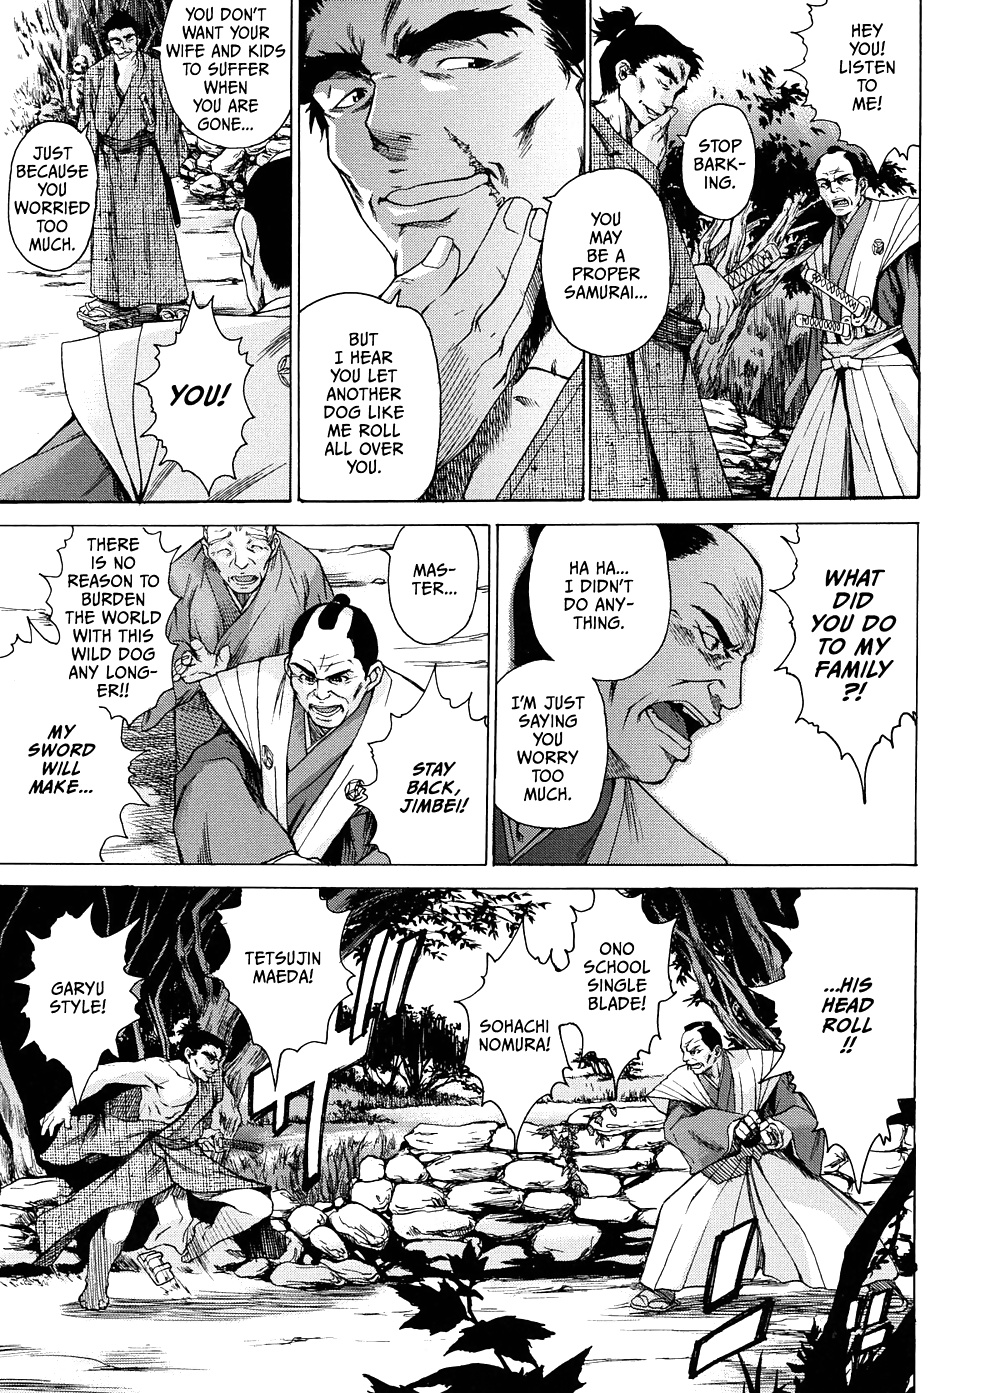 Domin-8 Me ( Take On me ) Hentai Manga Part 2 (78/98)